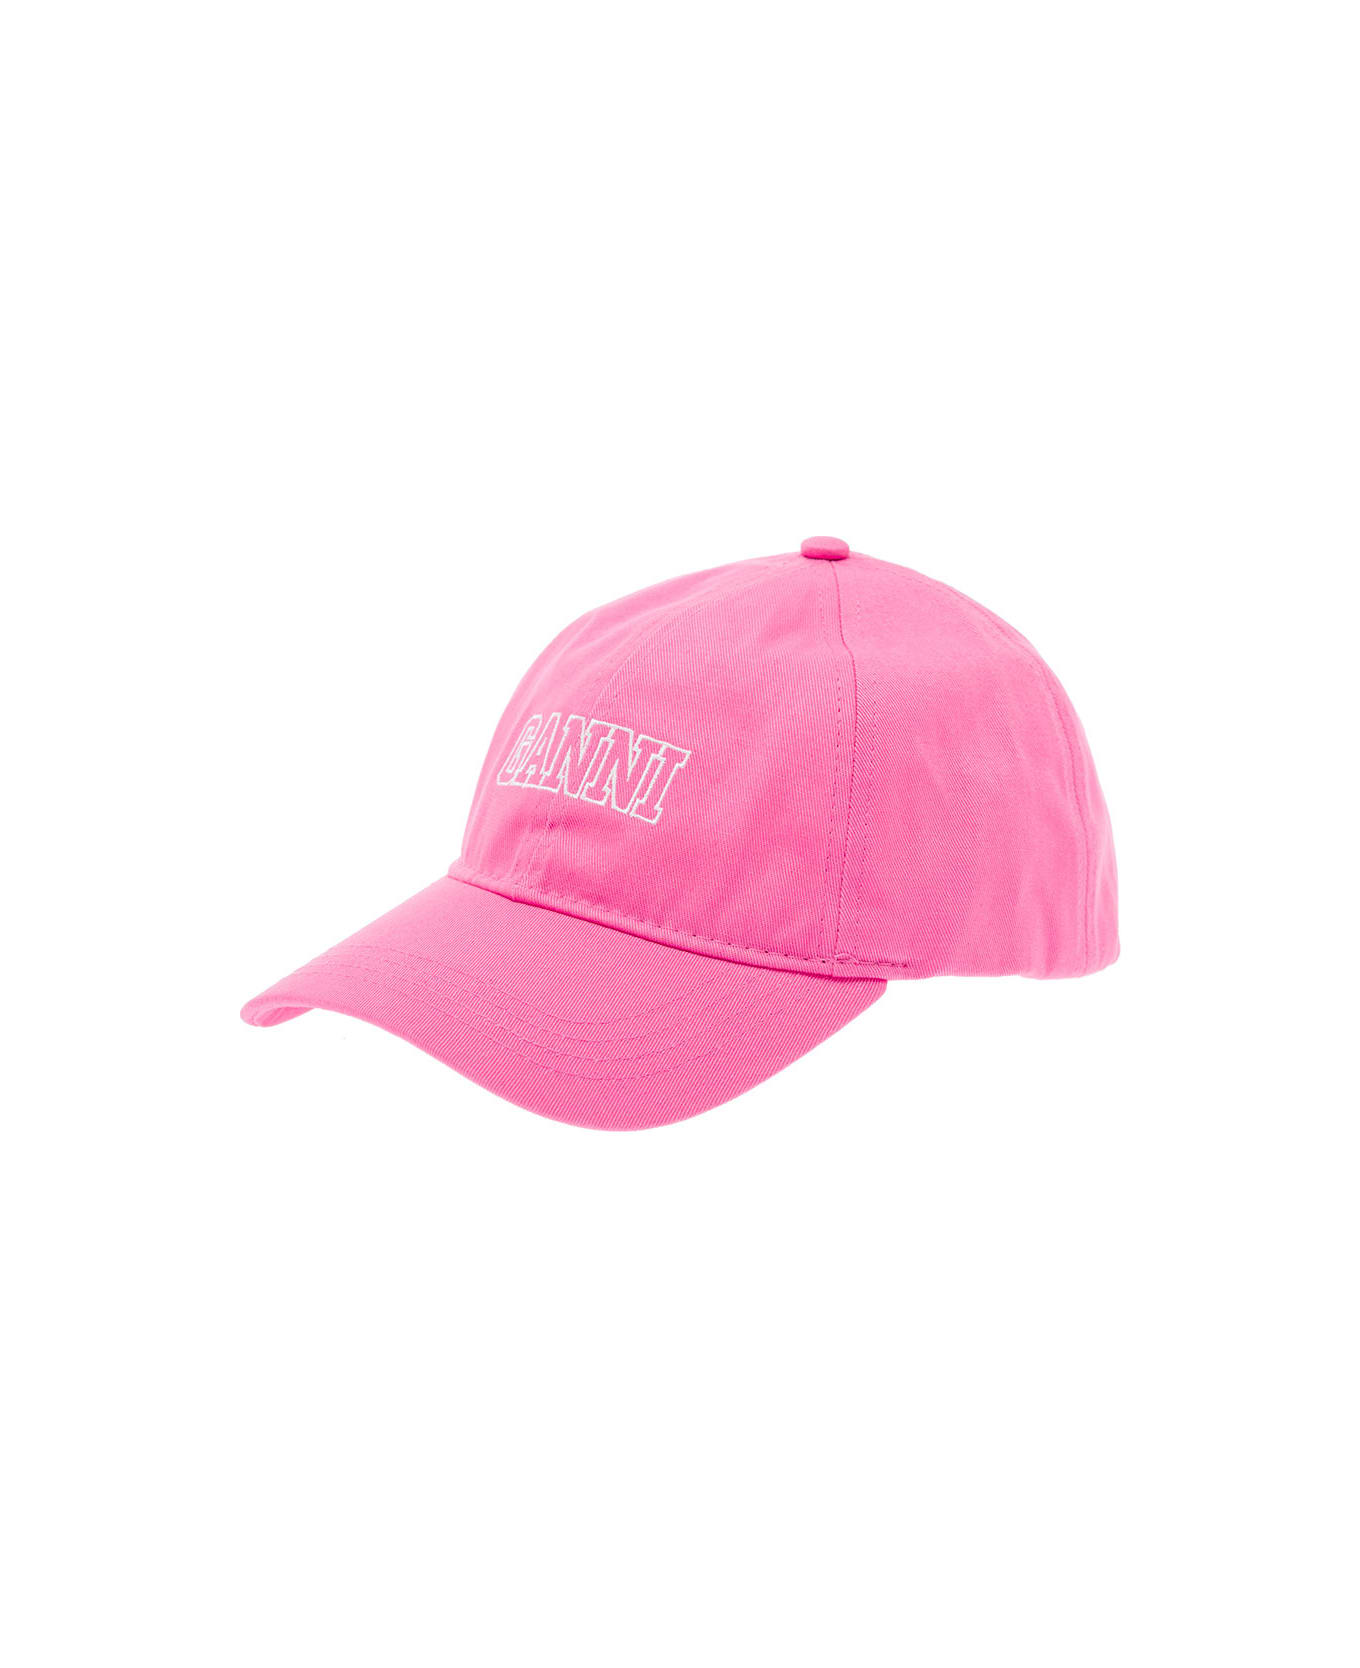 Ganni Cap - Pink